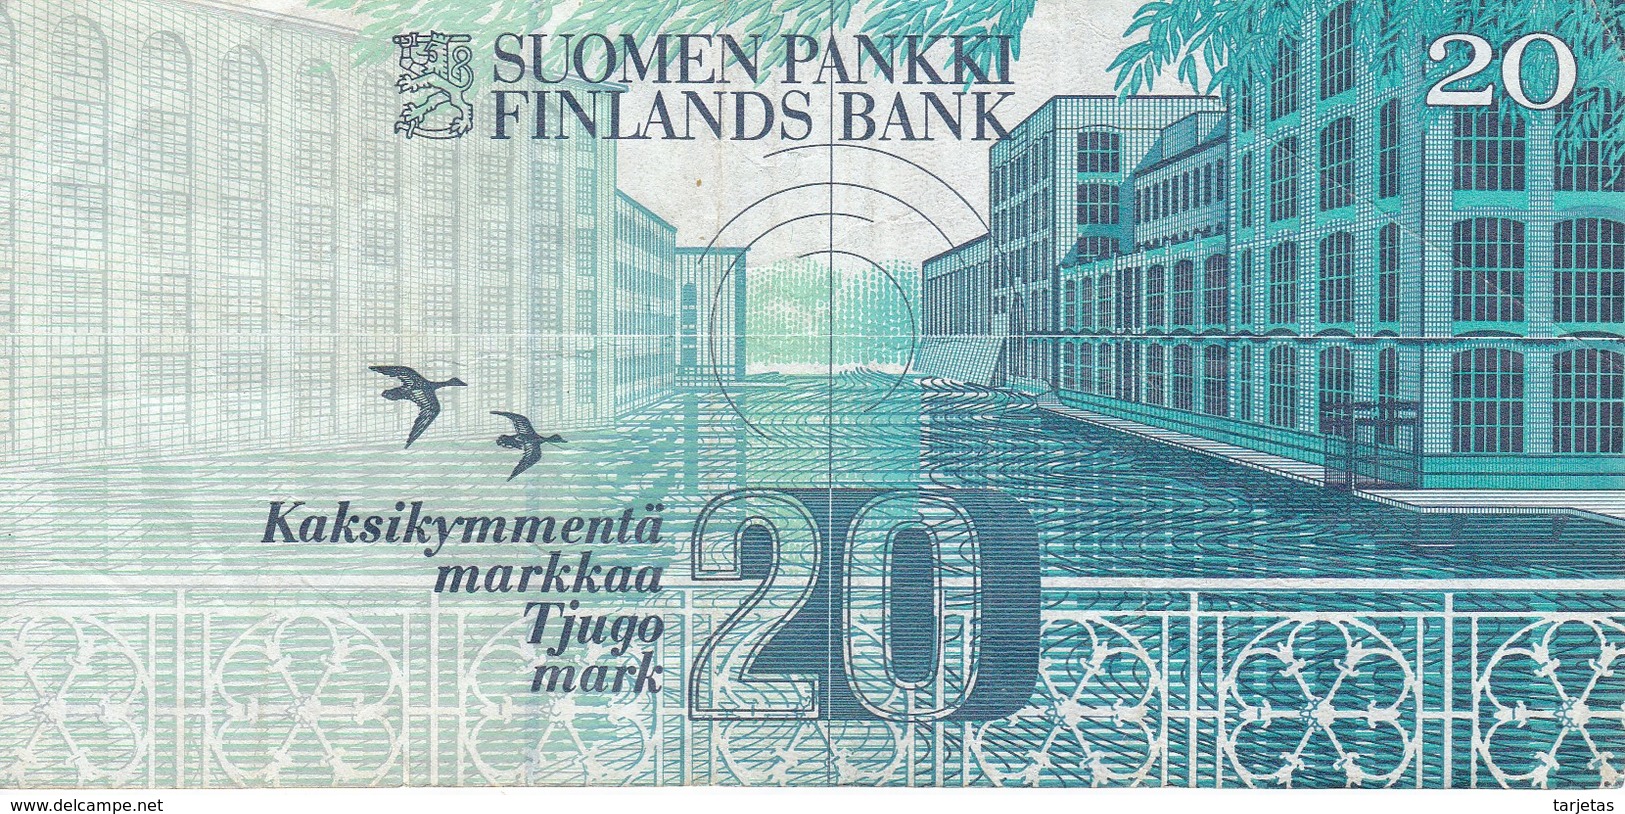 BILLETE DE FINLANDIA DE 20 MARKKAA DEL AÑO 1993  (BANKNOTE) - Finlandia